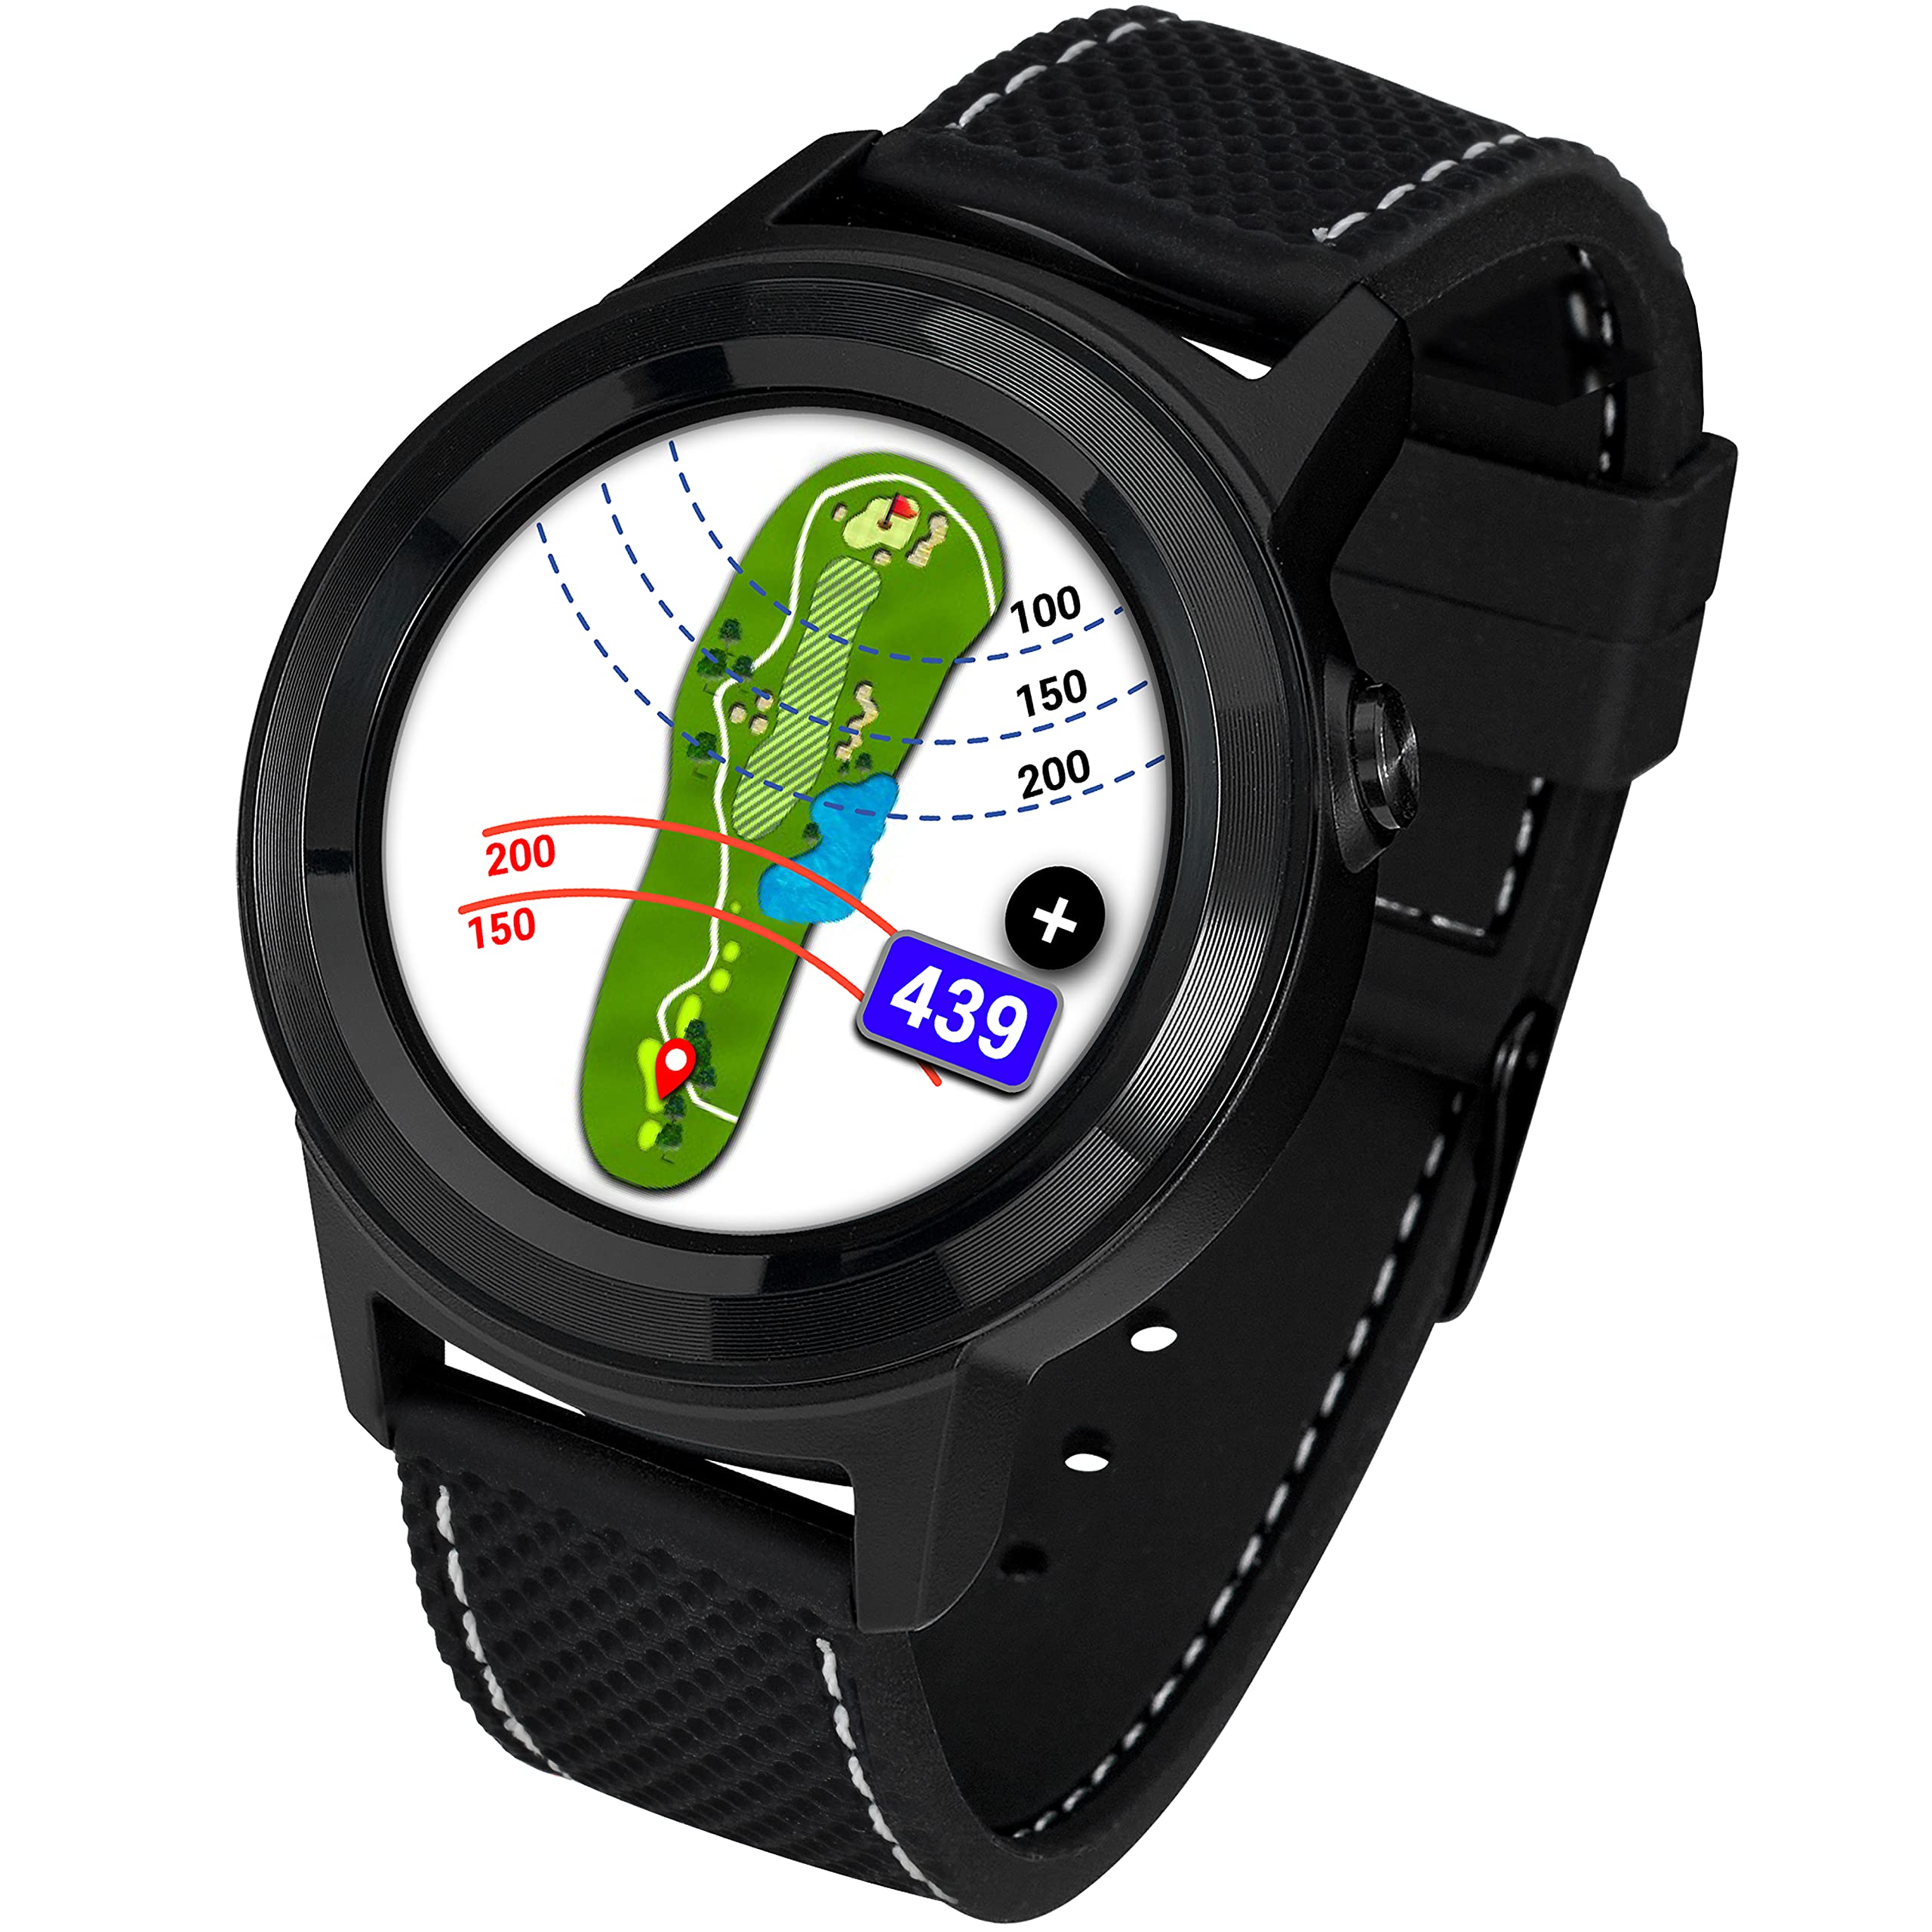 GolfBuddy Aim W11 Golf-Uhren mit GPS — Premium-Vollfarb-Touchscreen — einfach zu bedienende Golf-